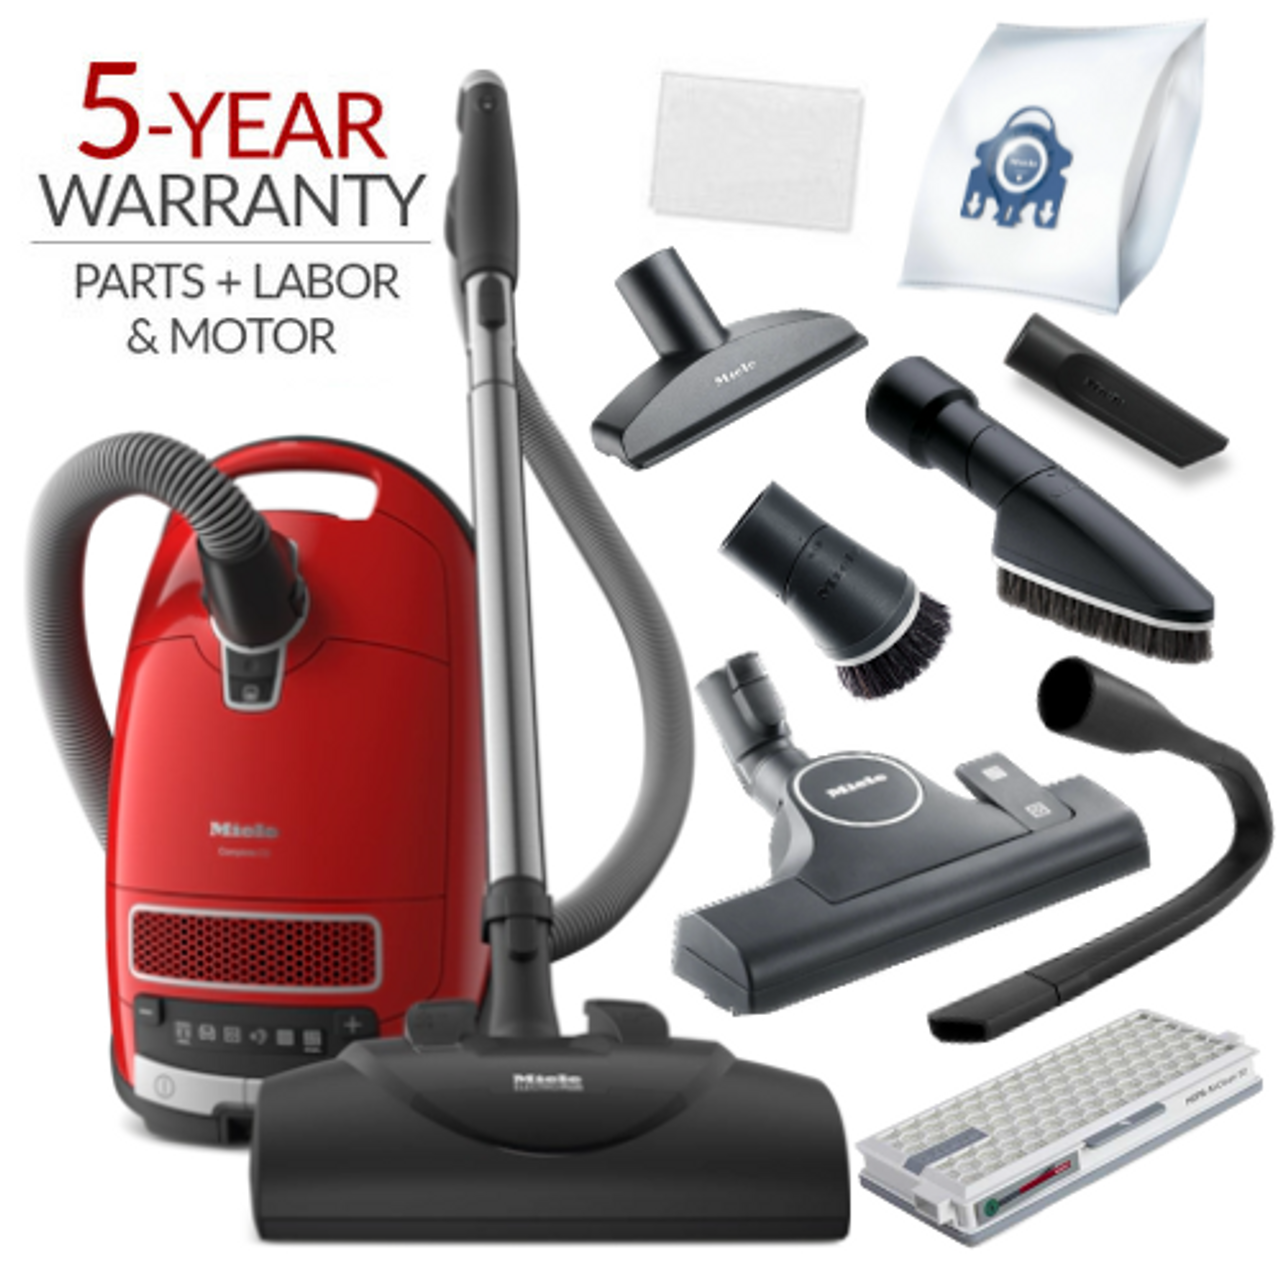 Miele - GN AirClean 3D – Vacuum cleaner accessories